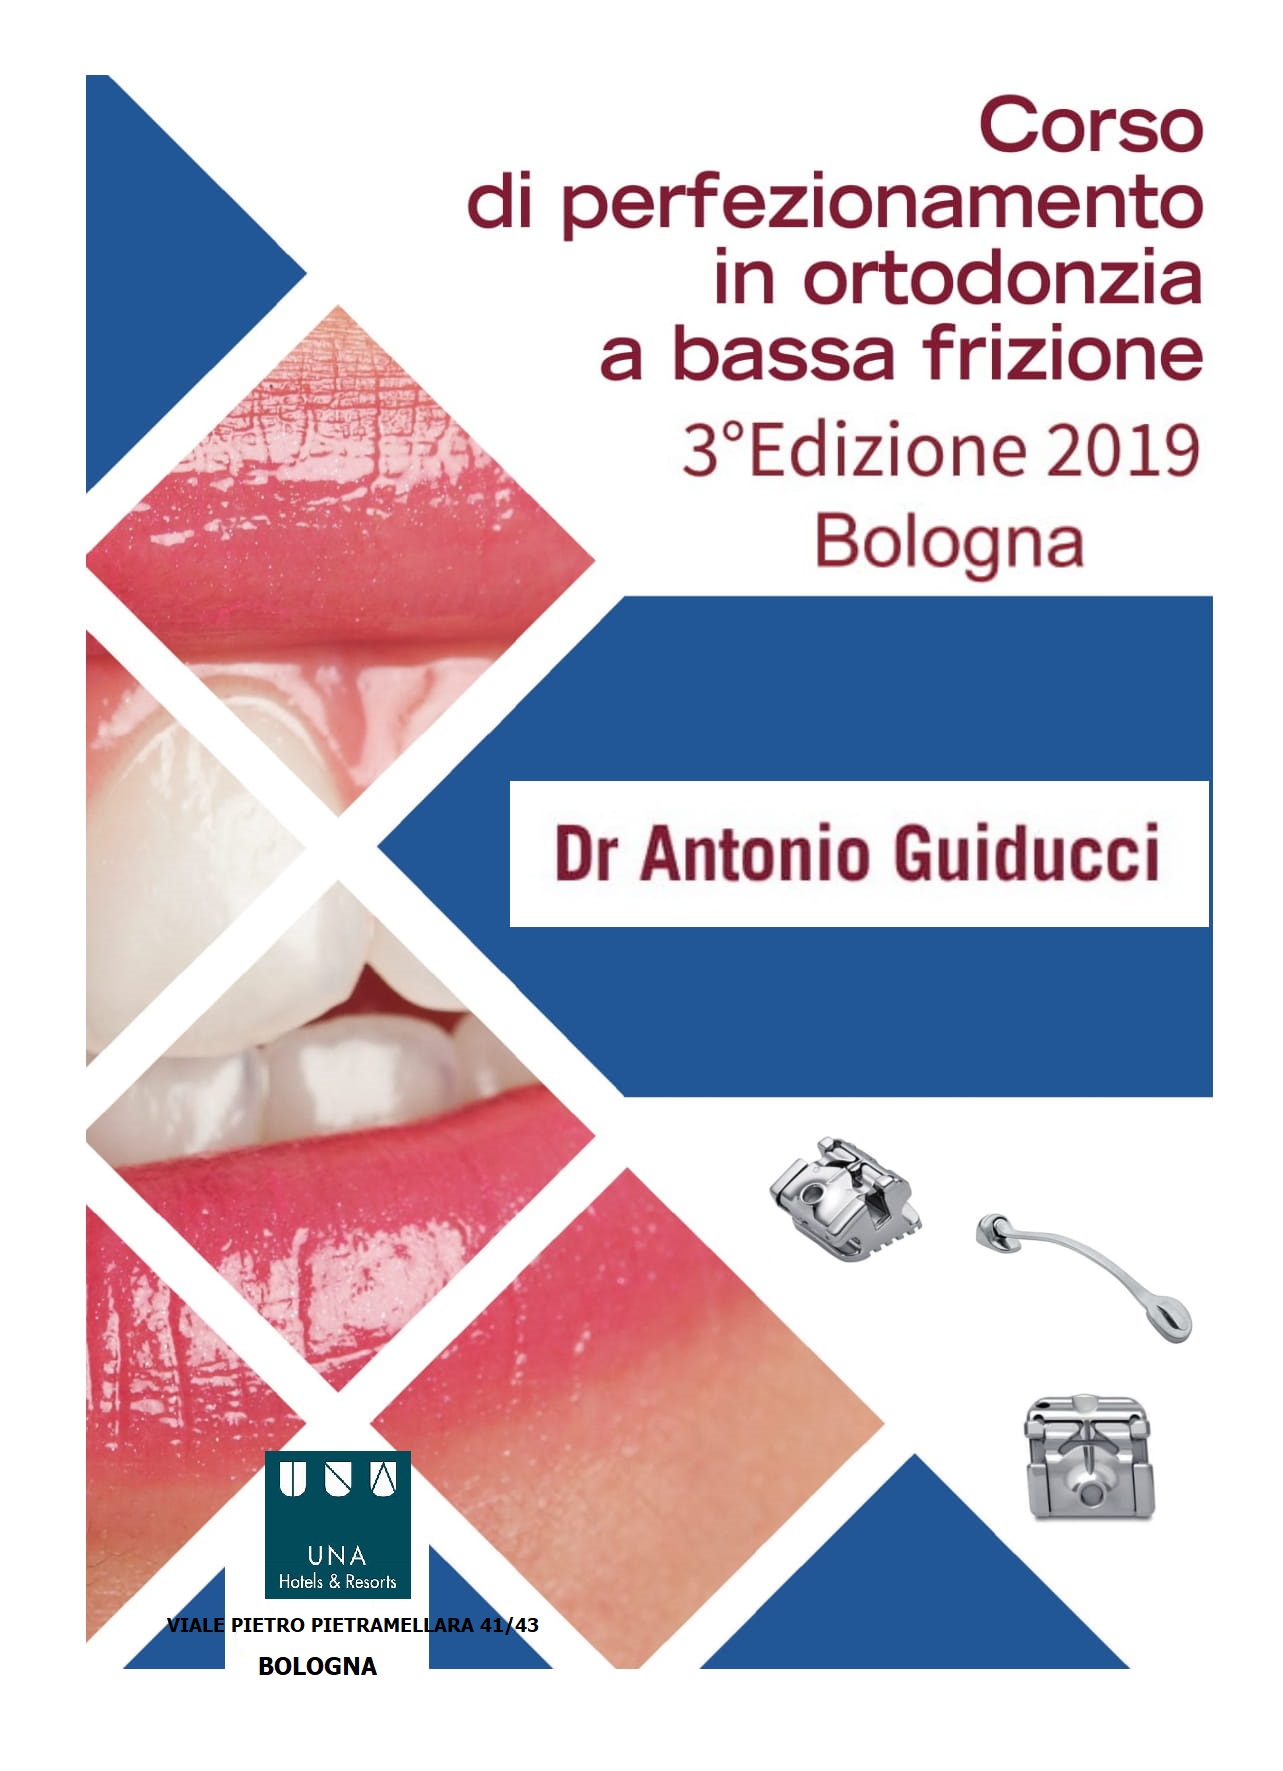 "Corso di perfezionamento in ortodonzia a bassa frizione" 3a Edizione 2019